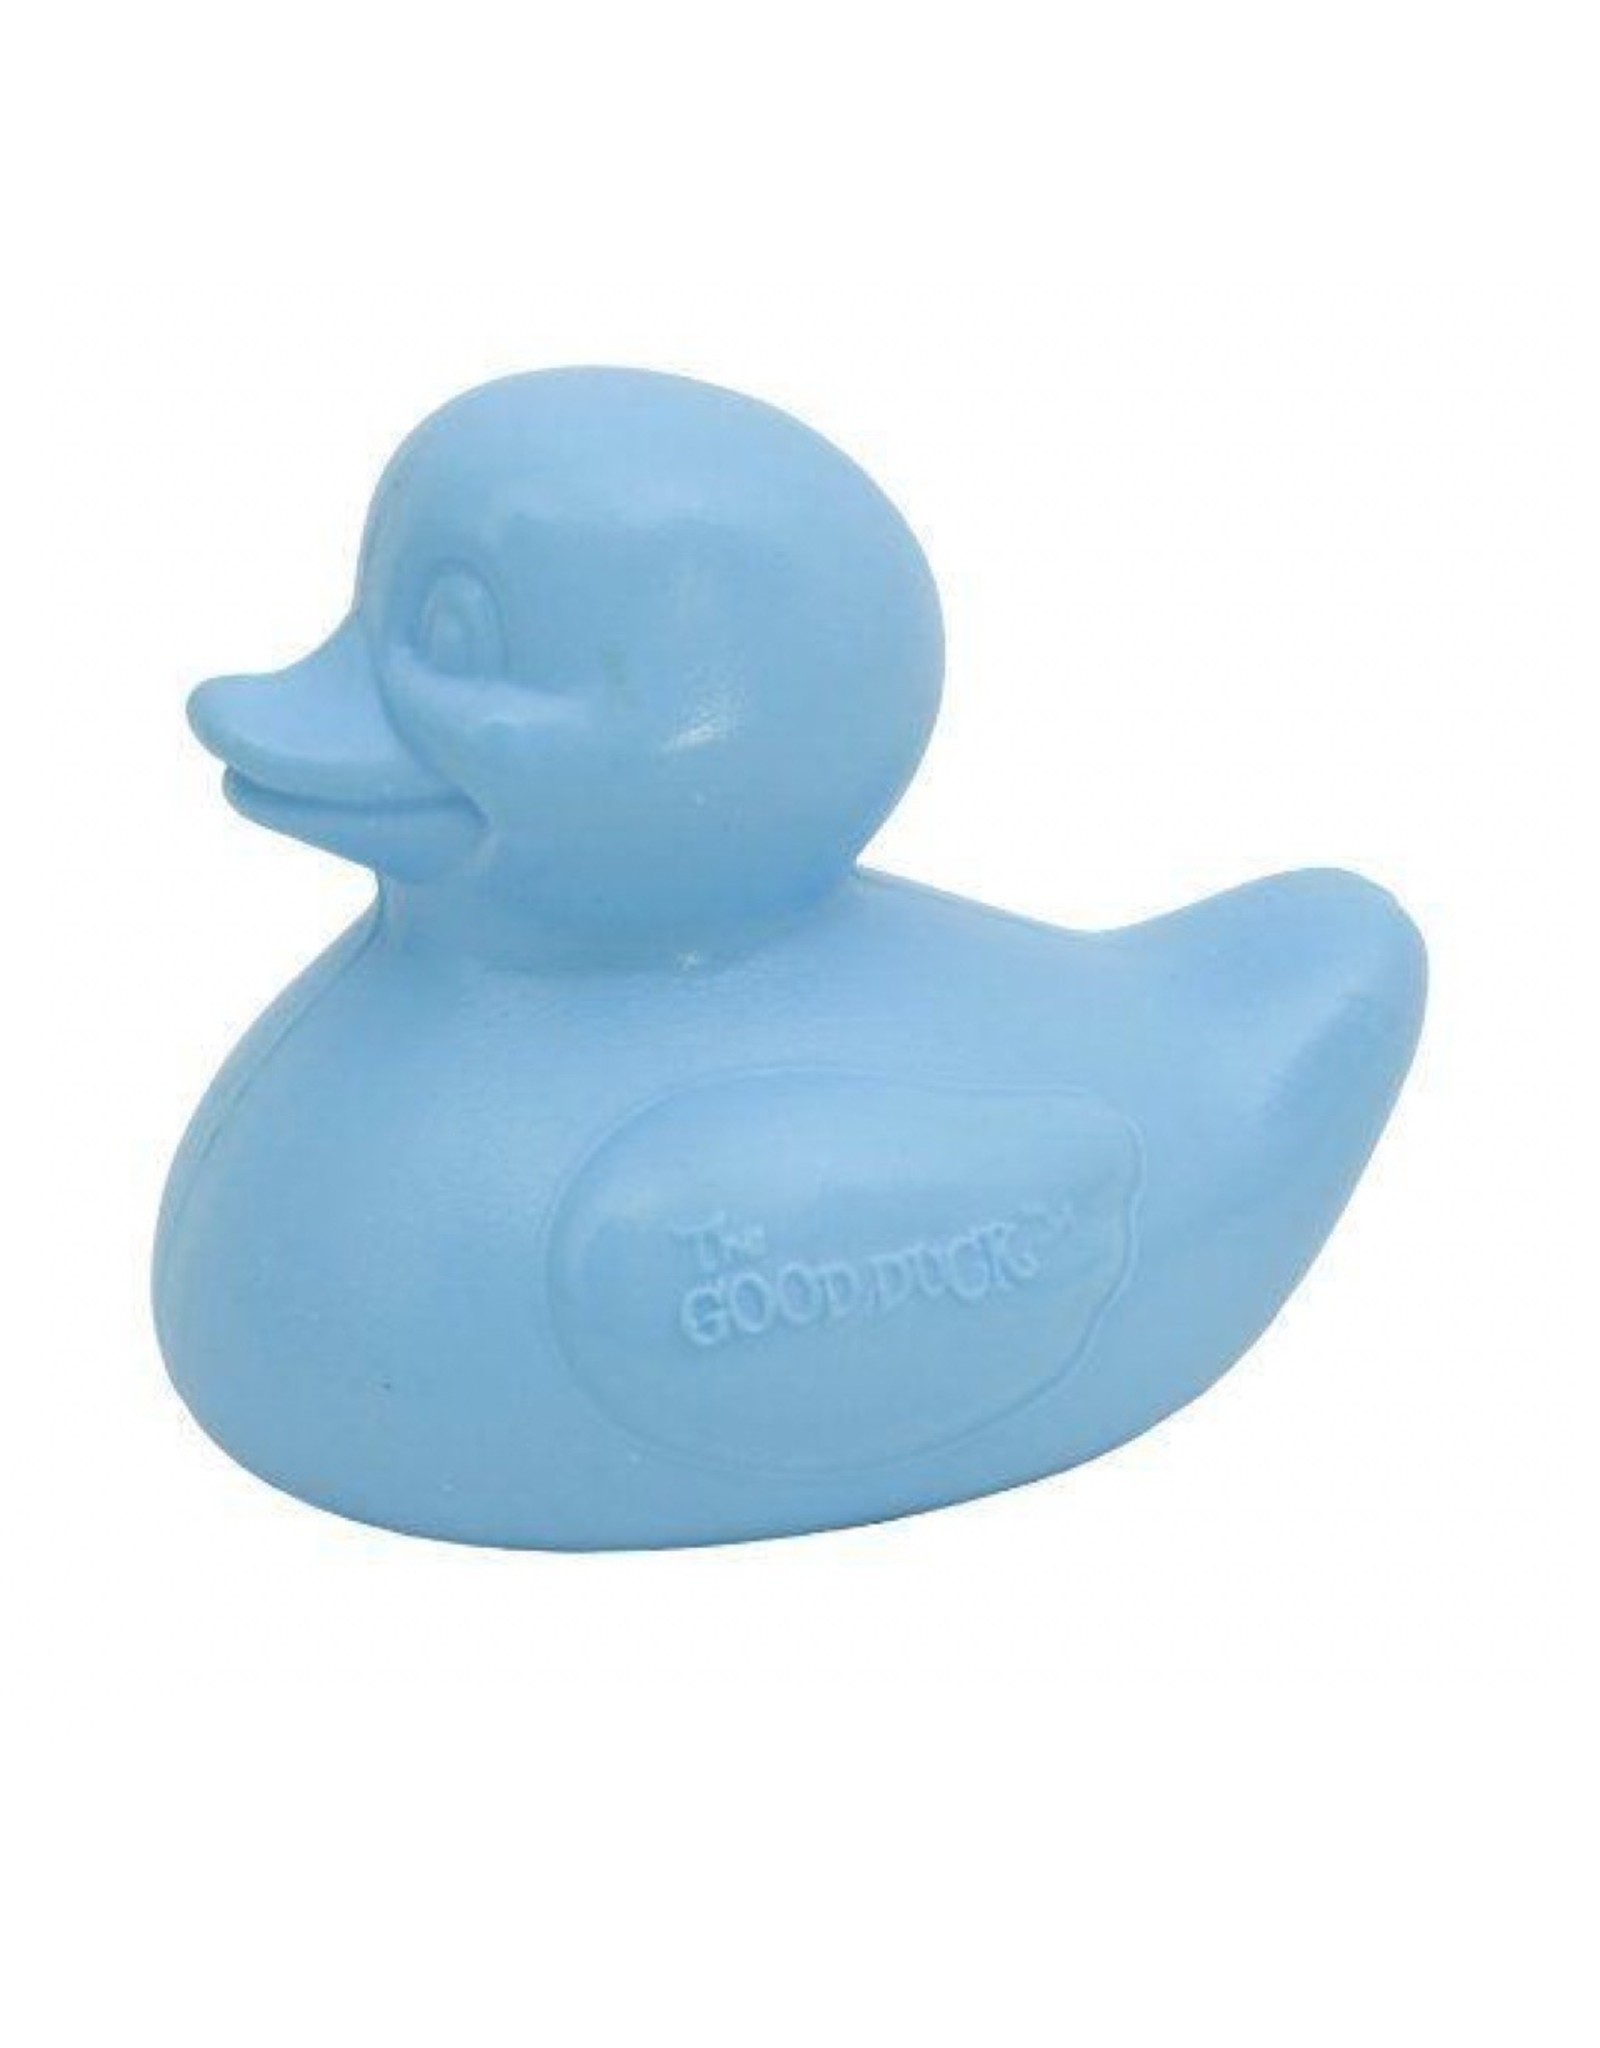 Canard "The Good Duck" - Bleu